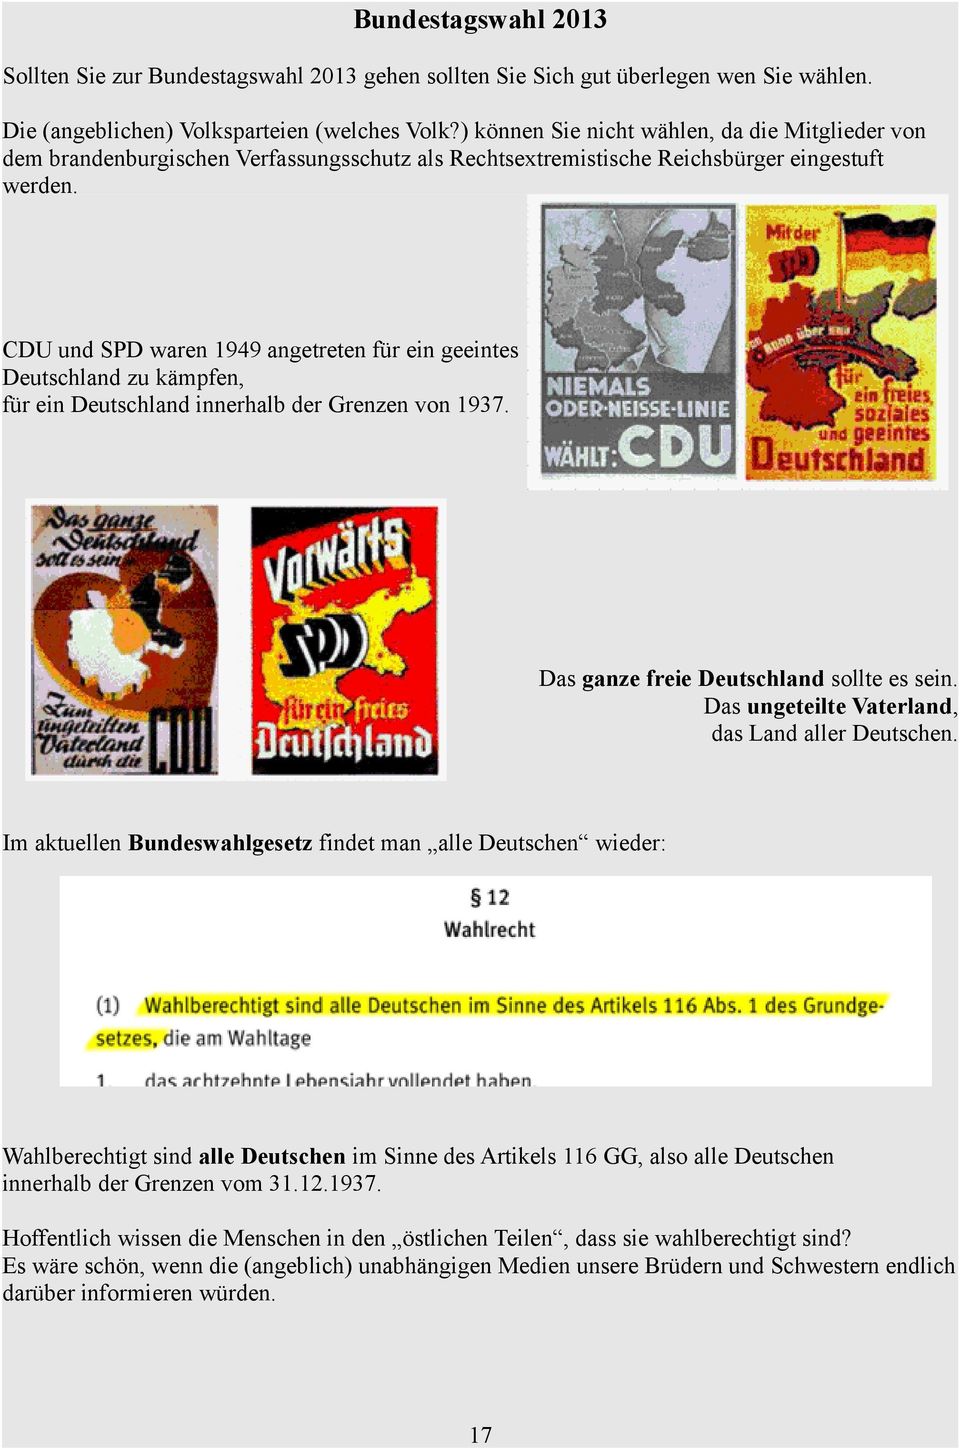 CDU und SPD waren 1949 angetreten für ein geeintes Deutschland zu kämpfen, für ein Deutschland innerhalb der Grenzen von 1937. Das ganze freie Deutschland sollte es sein.